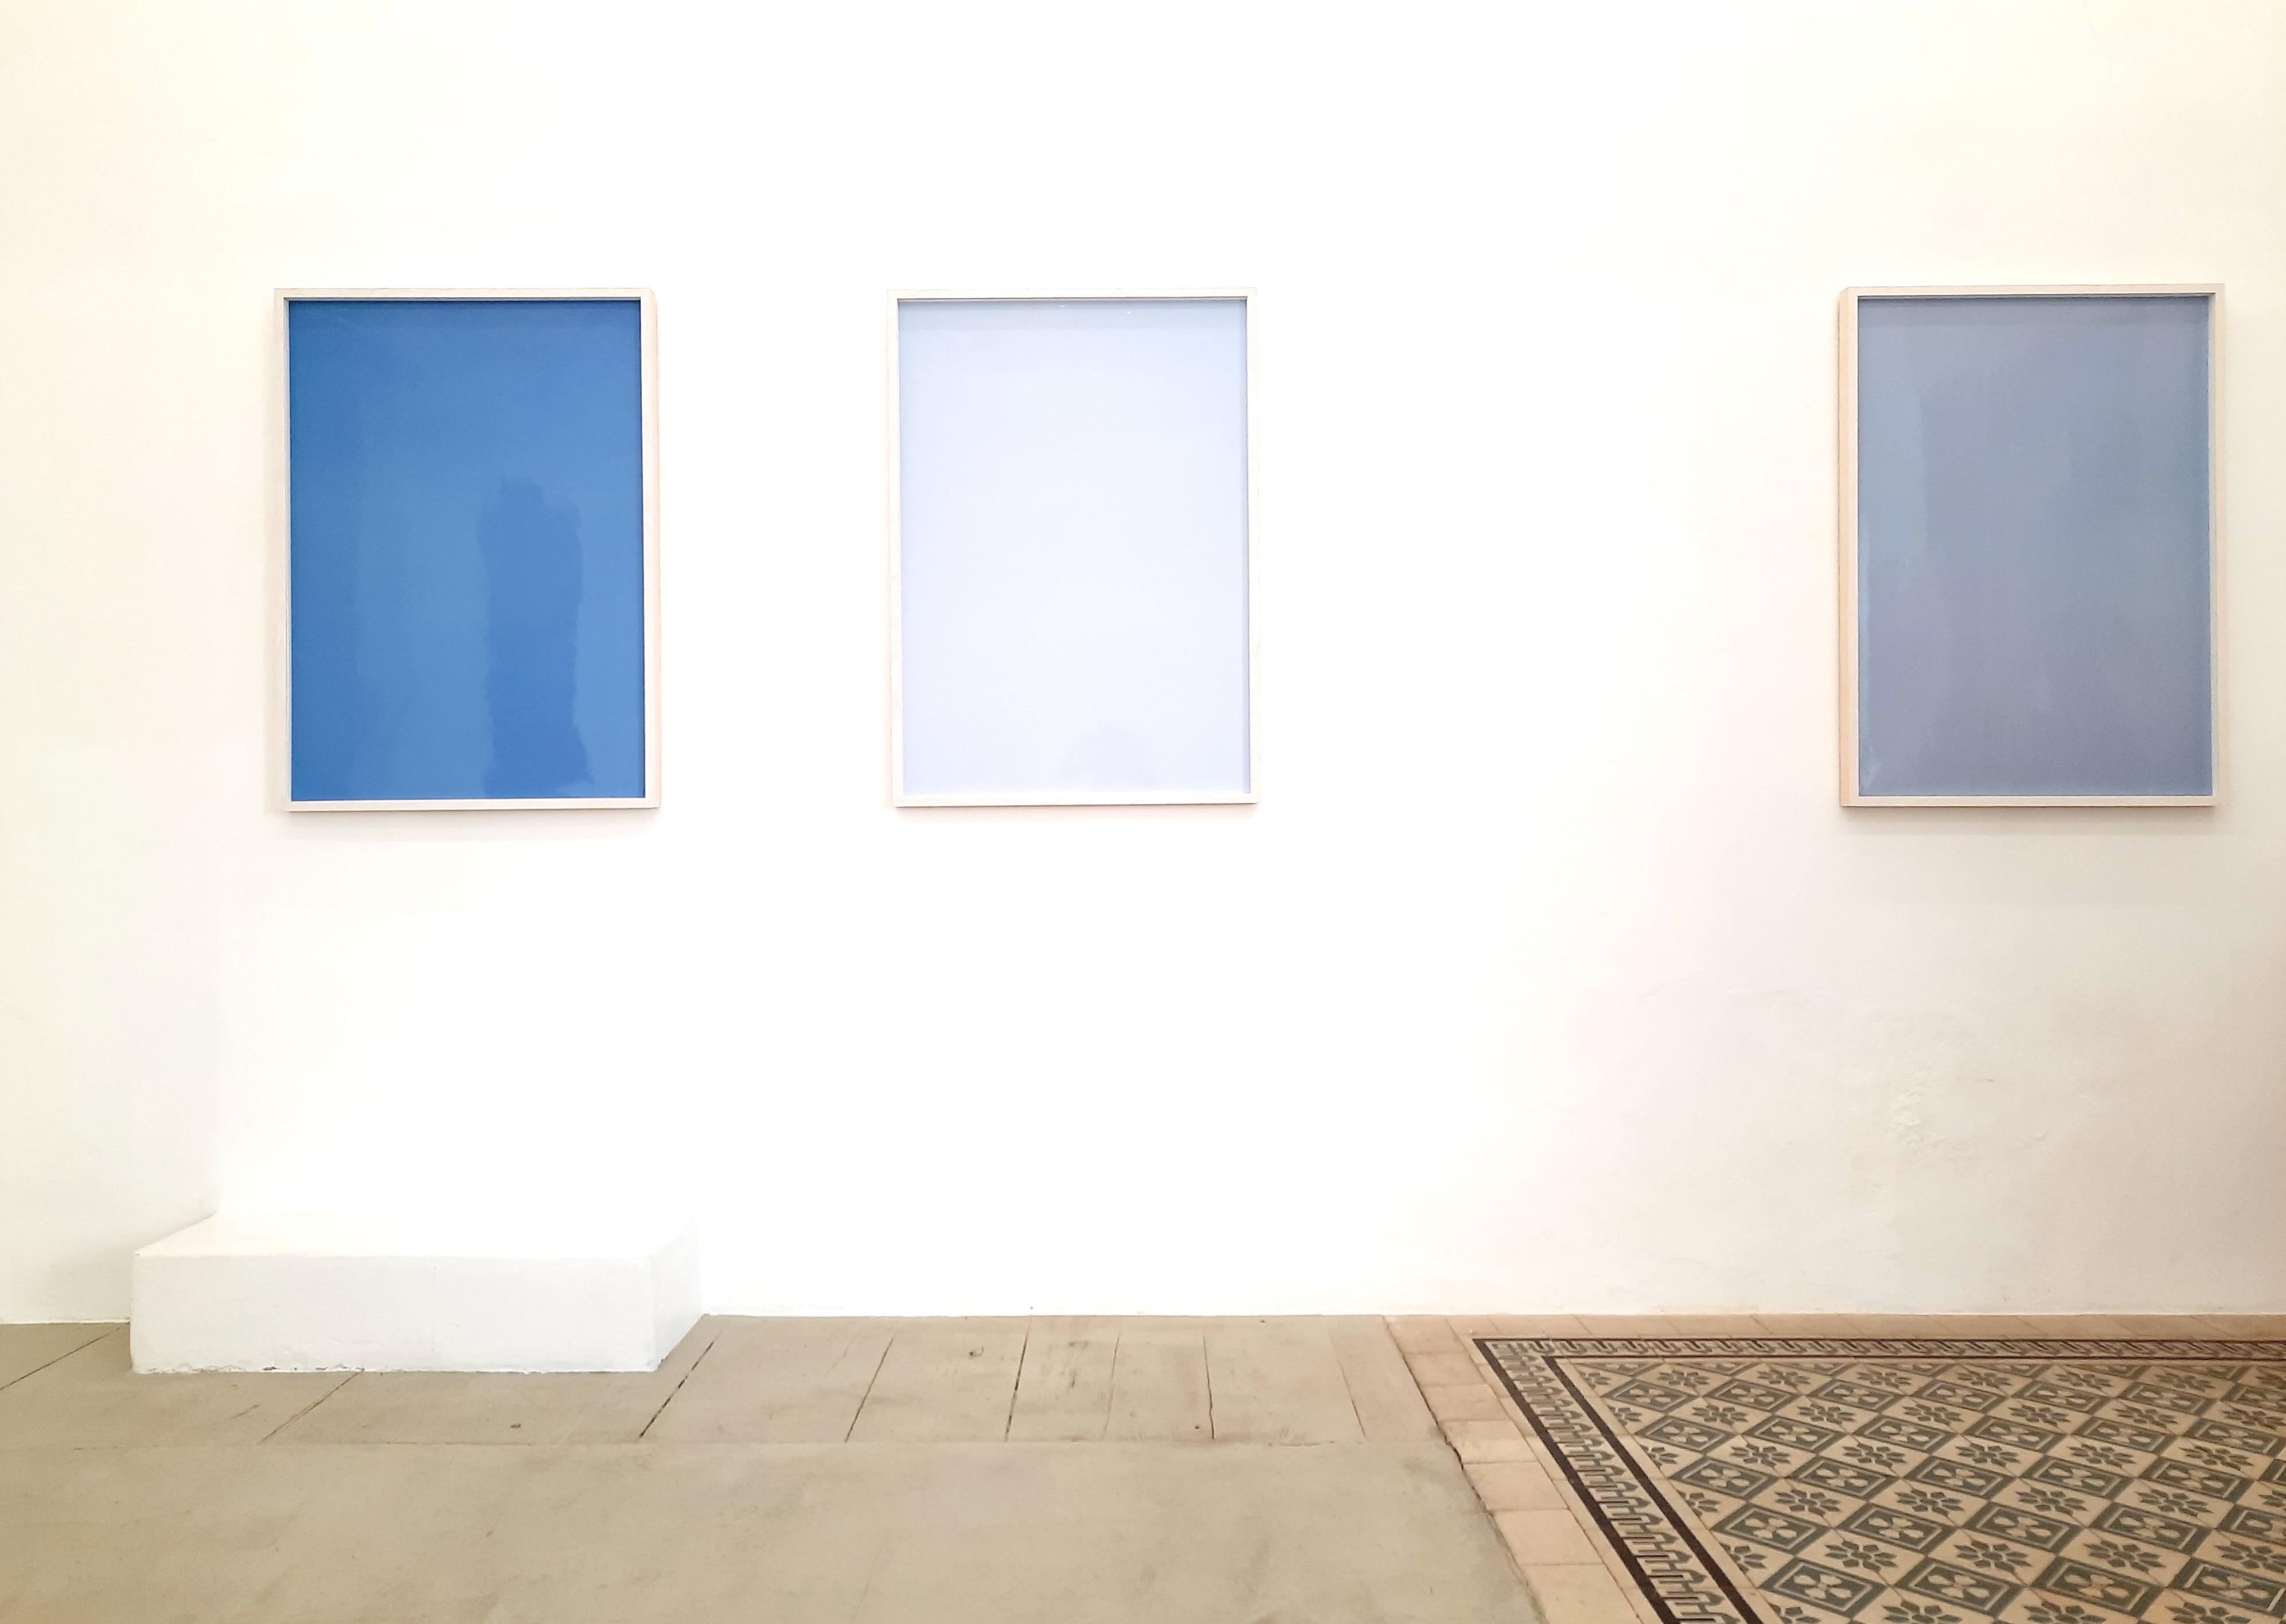 Schatten auf Papier, Nr. 1 – Zeitgenössische abstrakte blaue monochrome Fotografie 1